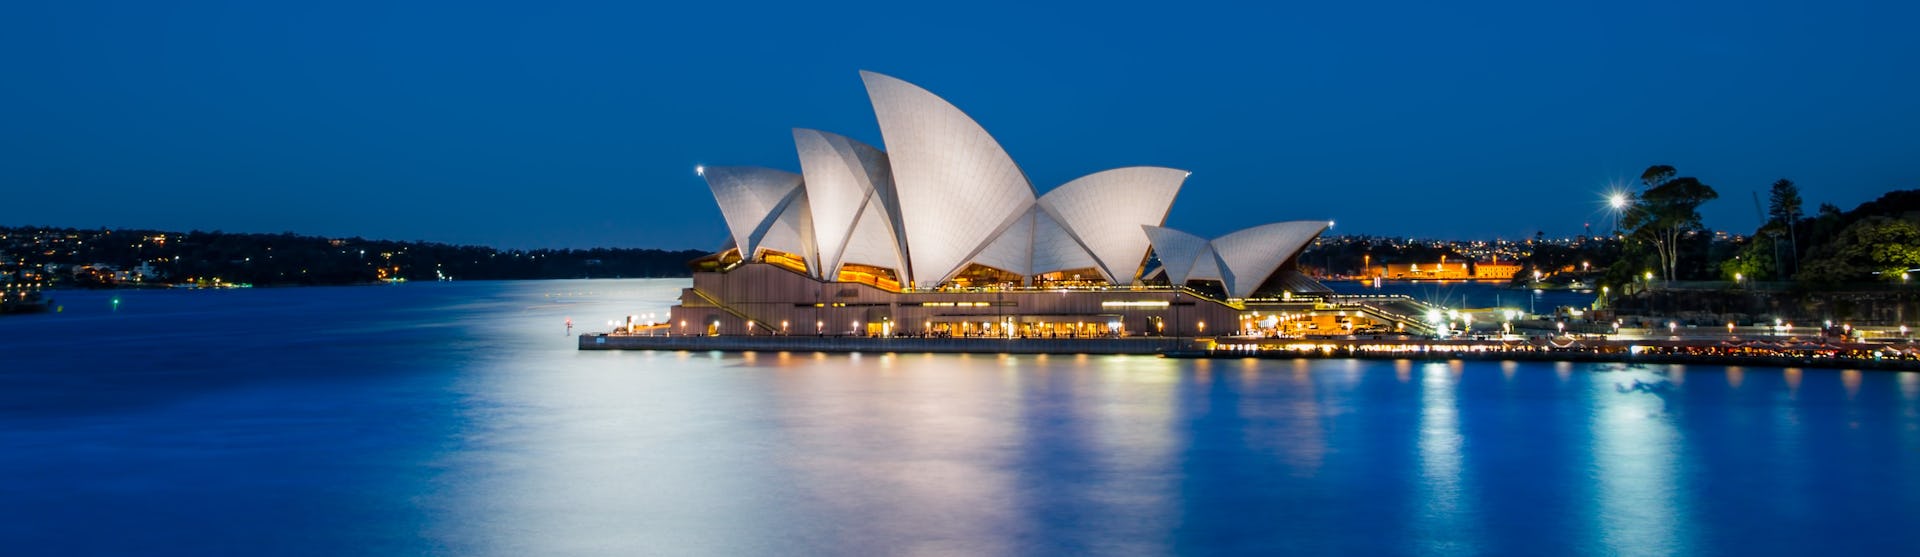 Bild i månljuset på det ikoniska operahuset i Sydney.